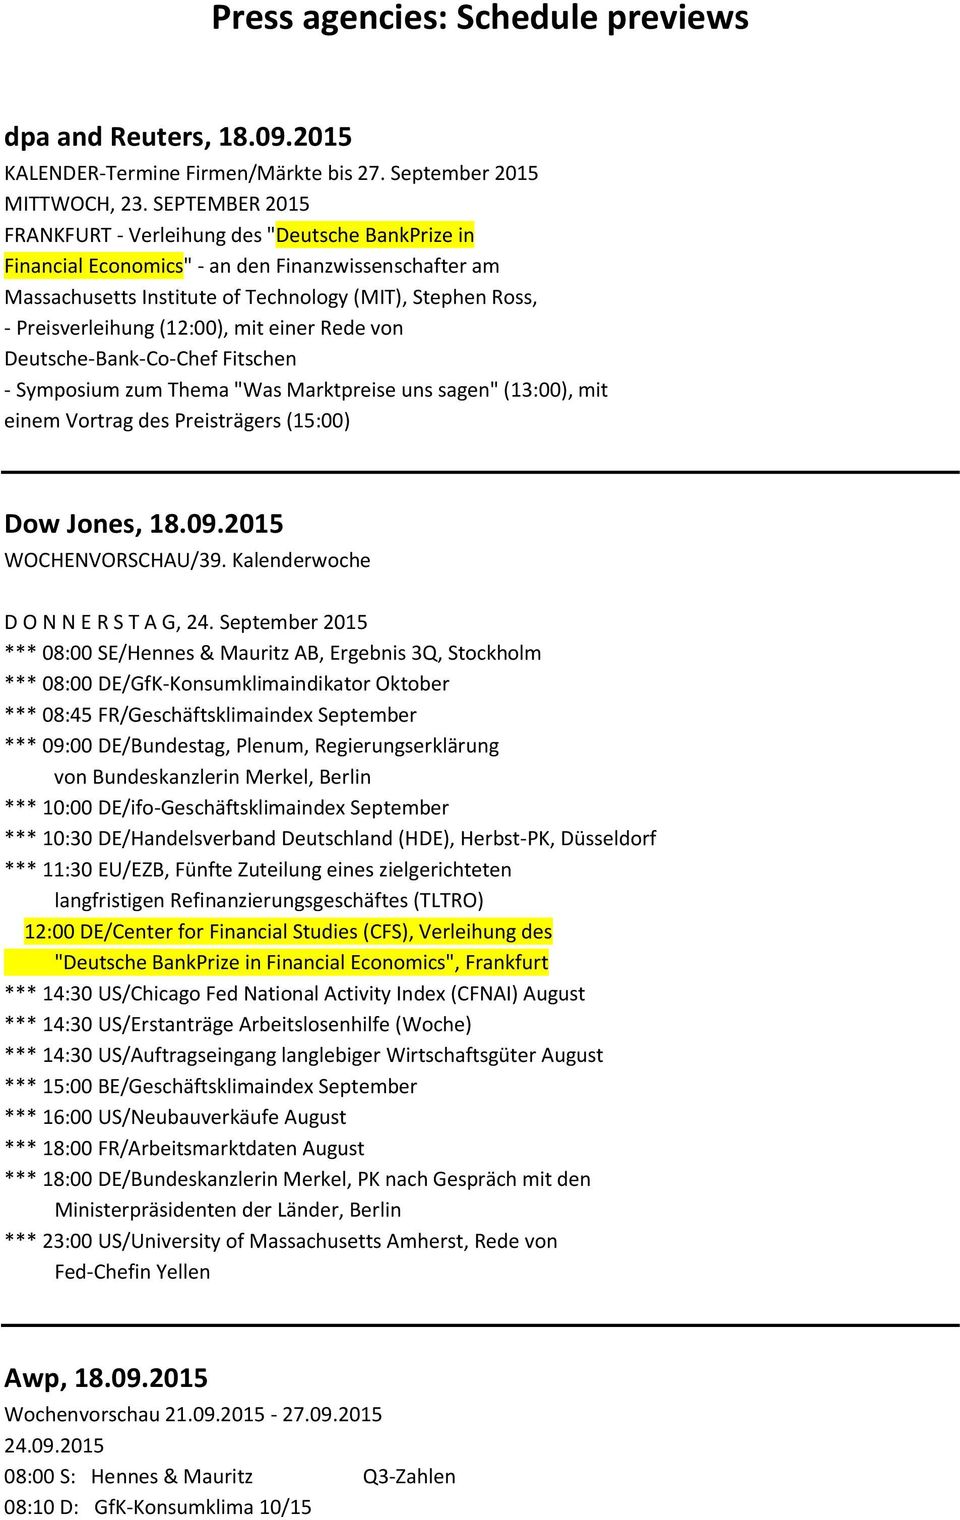 (12:00), mit einer Rede von Deutsche-Bank-Co-Chef Fitschen - Symposium zum Thema "Was Marktpreise uns sagen" (13:00), mit einem Vortrag des Preisträgers (15:00) Dow Jones, 18.09.